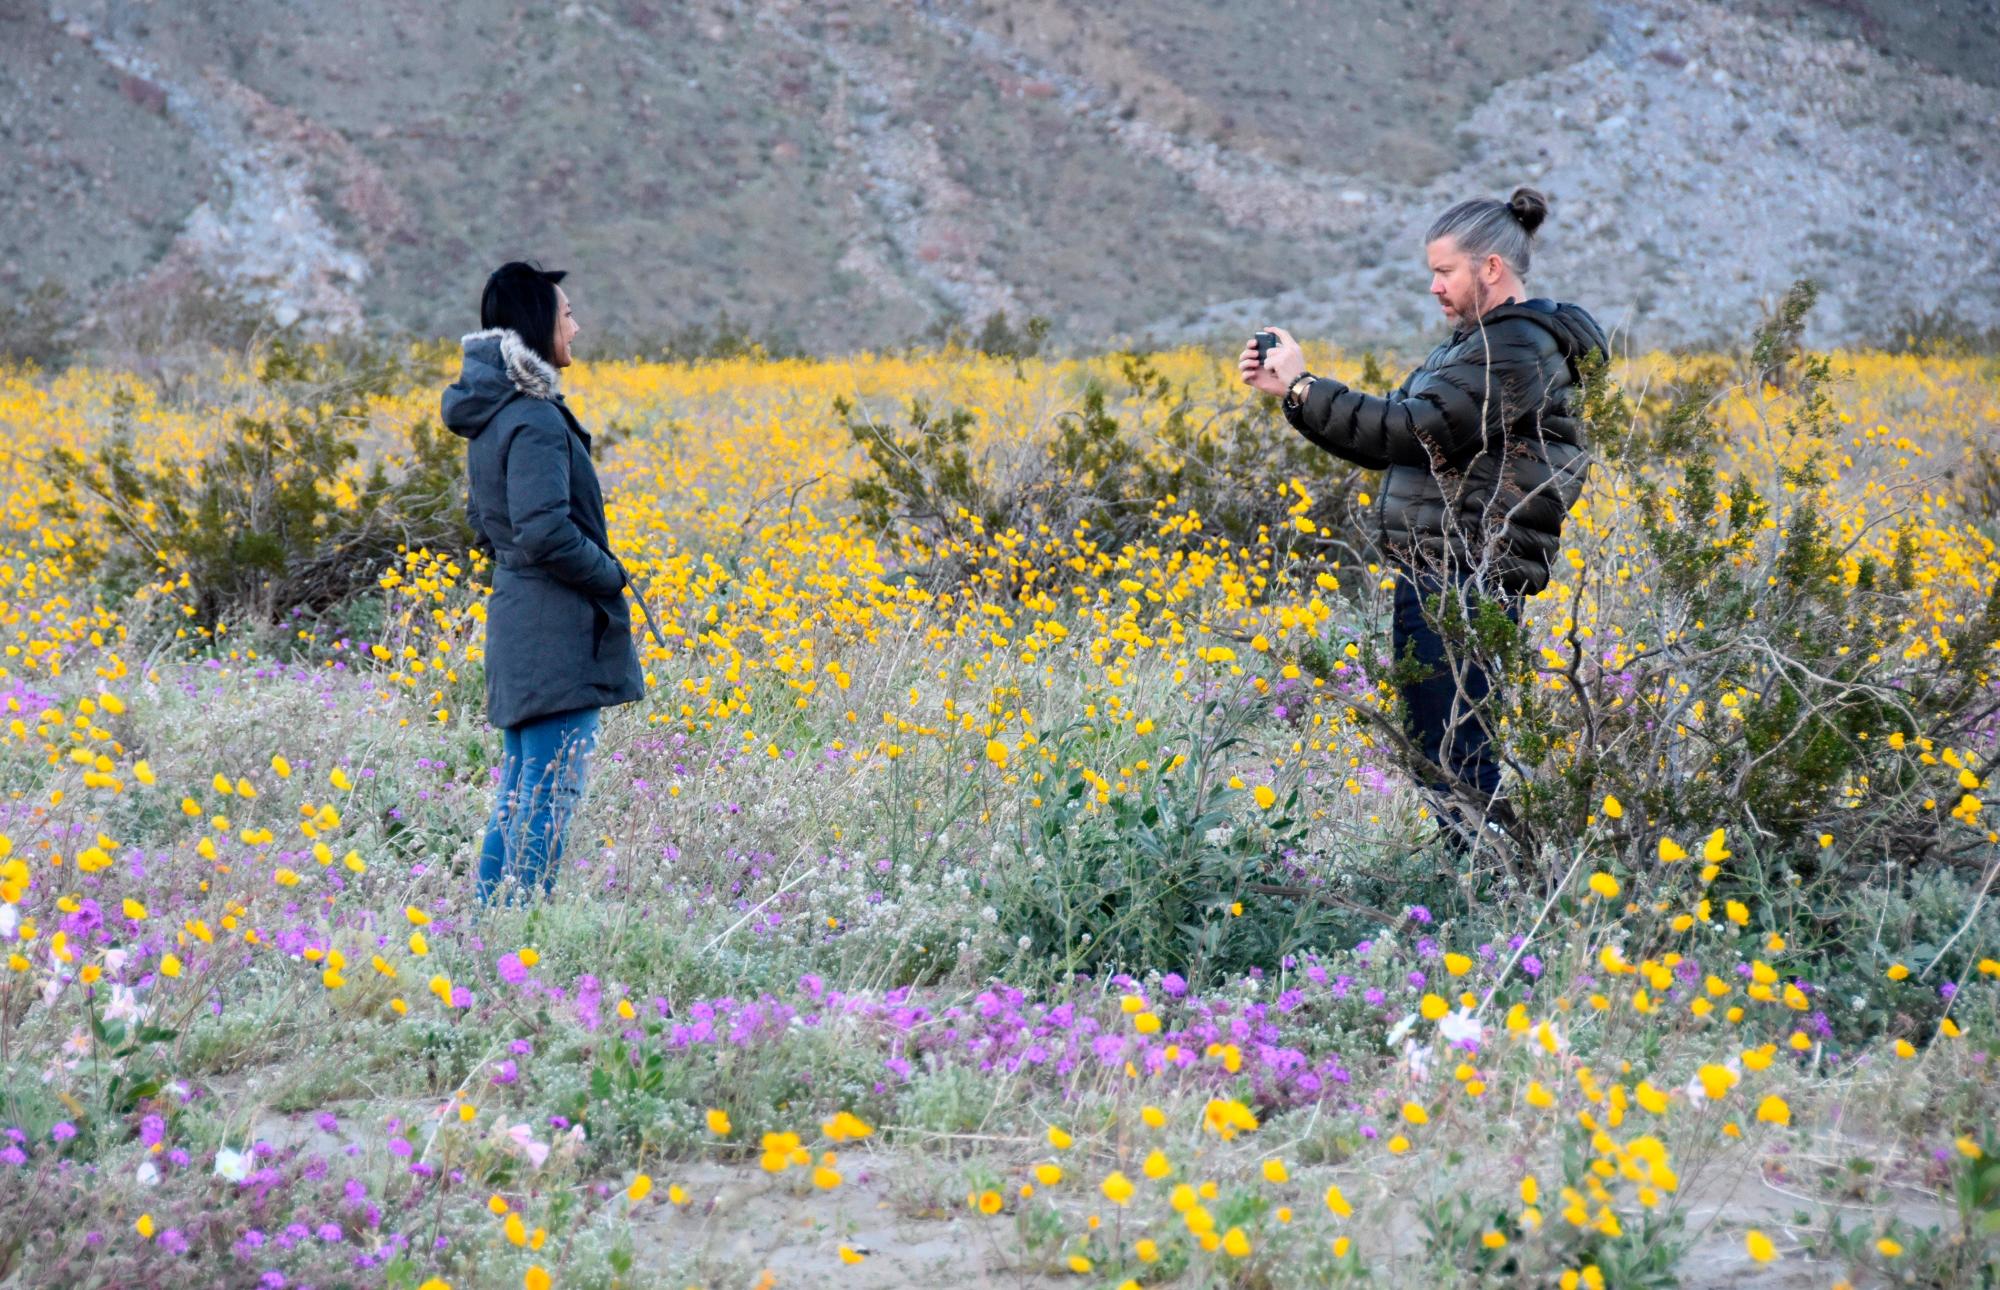 SAN DIEGO (CA, EEUU), 10/03/2019.- Fotografía del 7 de marzo donde aparecen dos personas mientras toman fotos entre el manto temporal de flores silvestres en el Parque Estatal del Desierto de Anza-Borrego en el condado de San Diego, California. En el desierto californiano de Anza-Borrego, como resultado de inviernos muy húmedos, florece un colorido jardín que atrae a amantes de la naturaleza para admirar un fenómeno cíclico, que en lo que va del presente siglo ha ocurrido cuatro veces. EFE/Iván Mejía